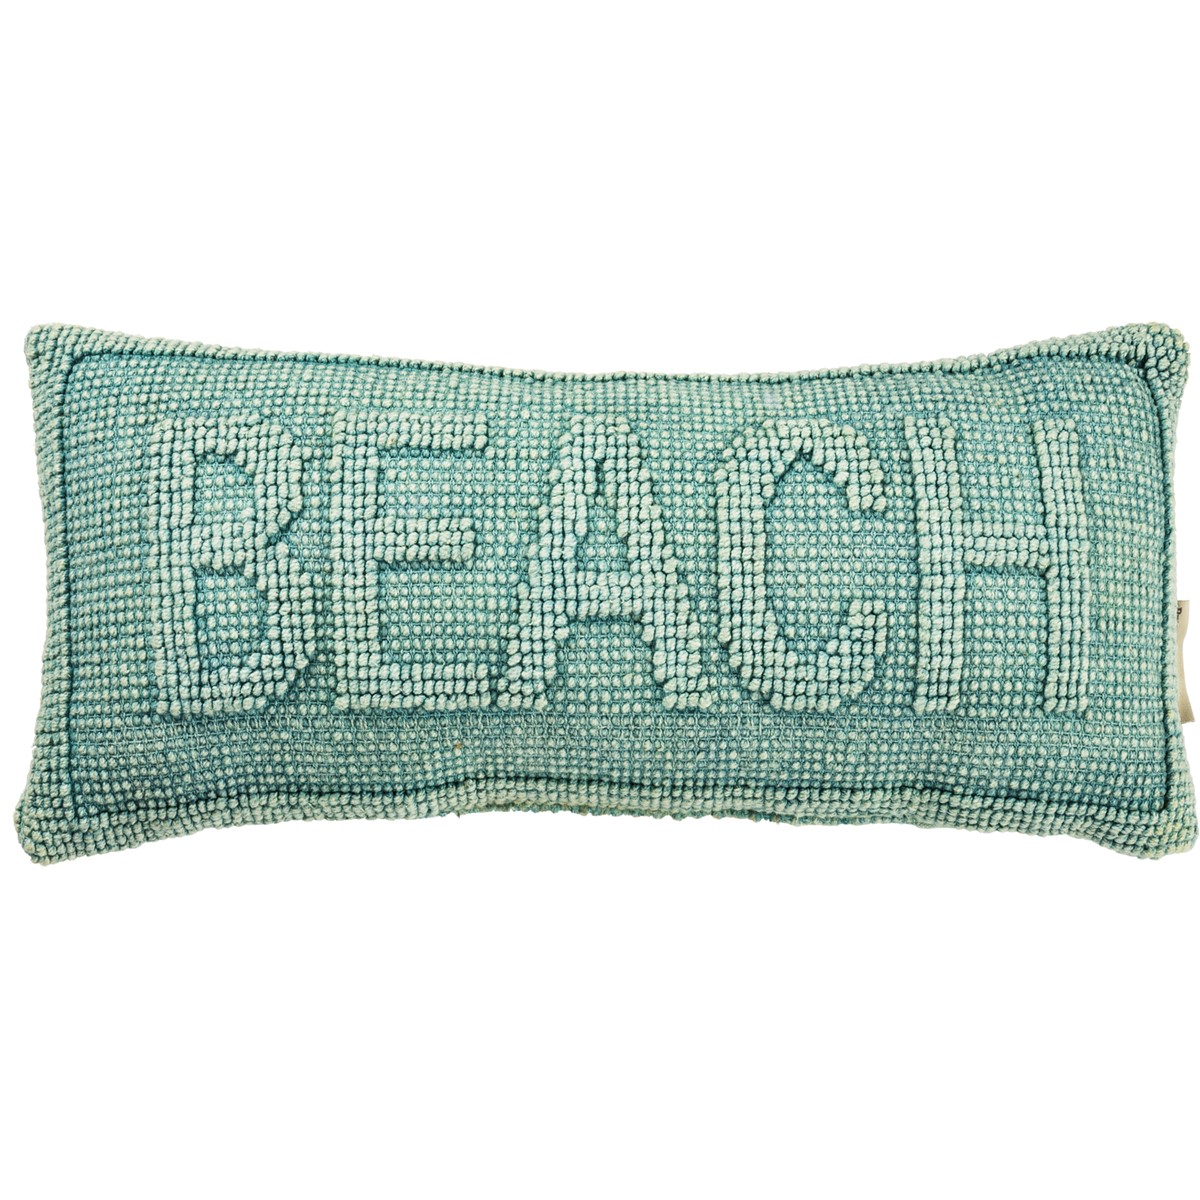 Beach Pillow - Cotton, Canvas, Zipper